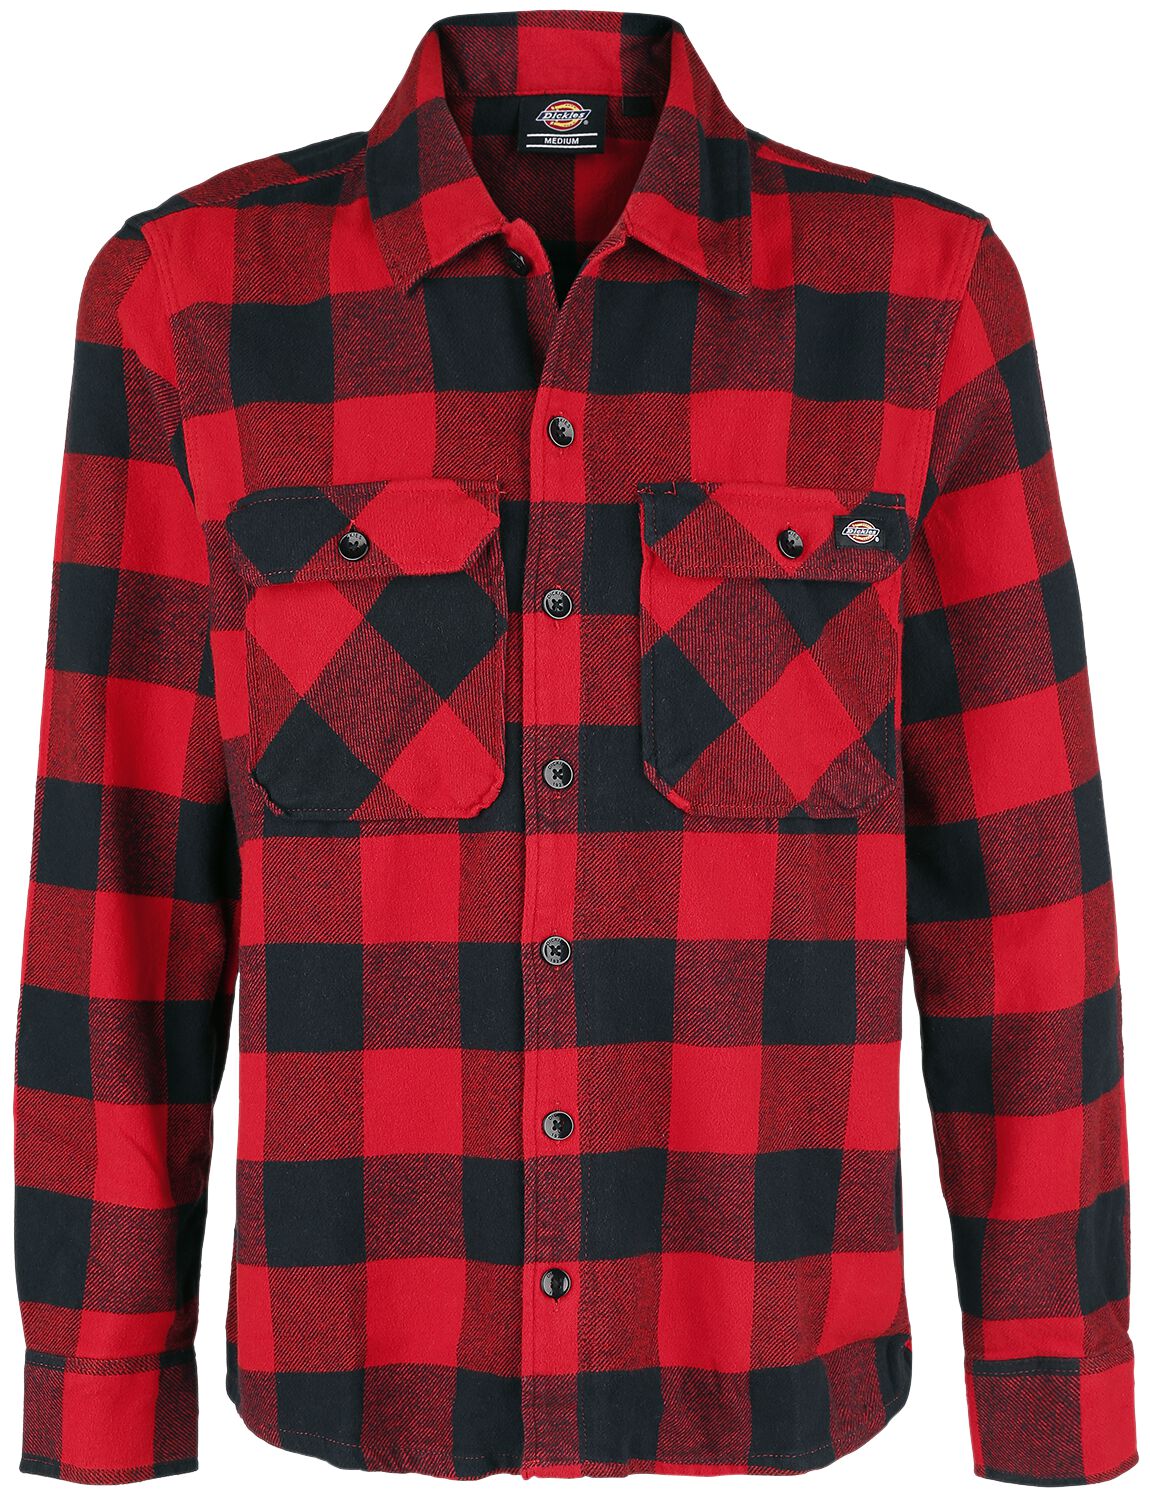 Image of Camicia Maniche Lunghe di Dickies - New Sacramento Shirt - S a M - Uomo - rosso